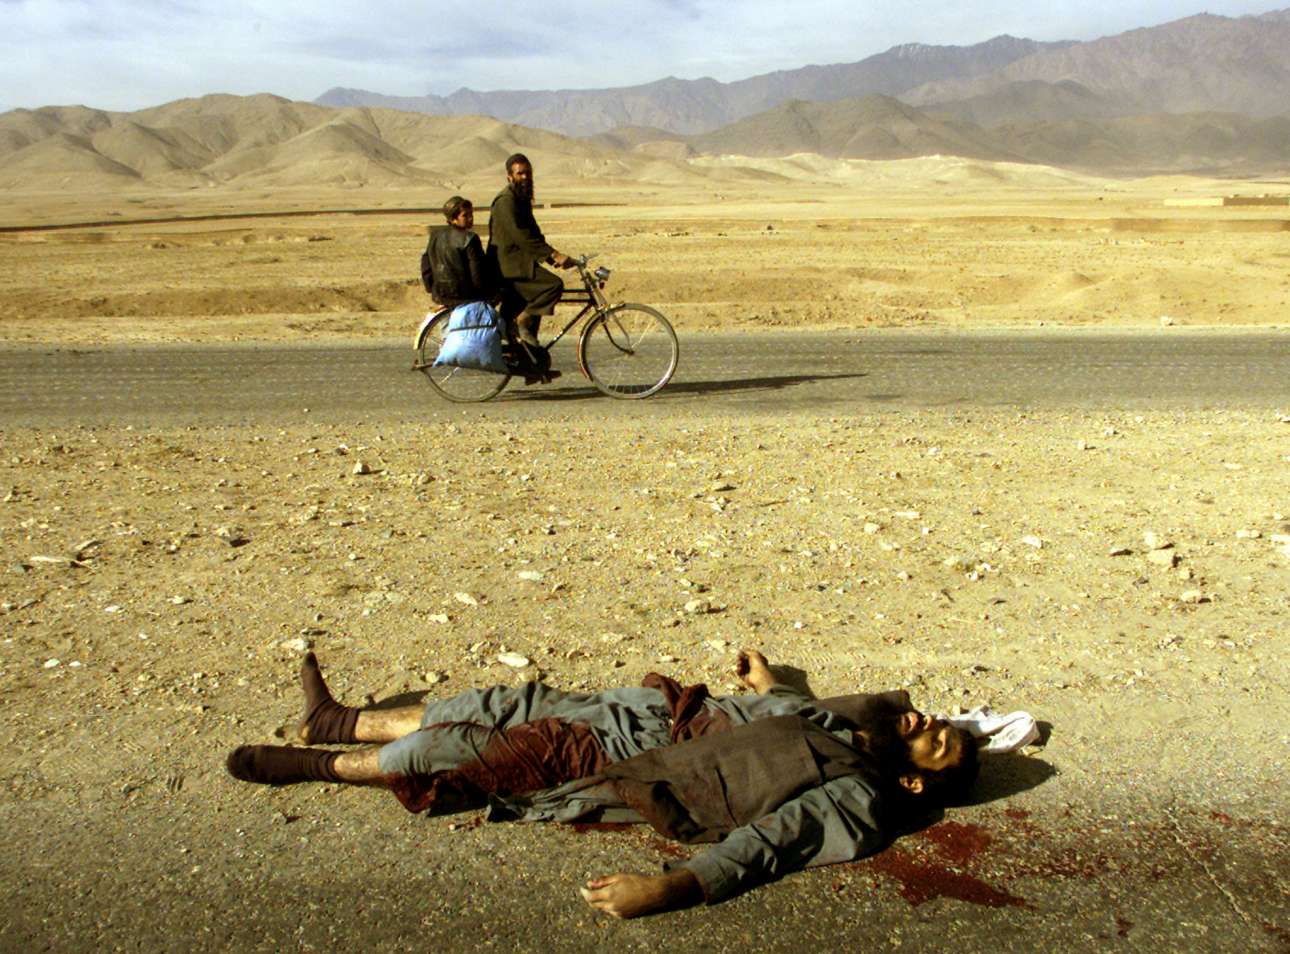 Καθημερινότητα ο θάνατος και στο Αφγανιστάν, εδώ τον Νοέμβριο του 2001 έξω από την Καμπούλ, λίγο πριν εκδιωχθούν οι Ταλιμπάν 